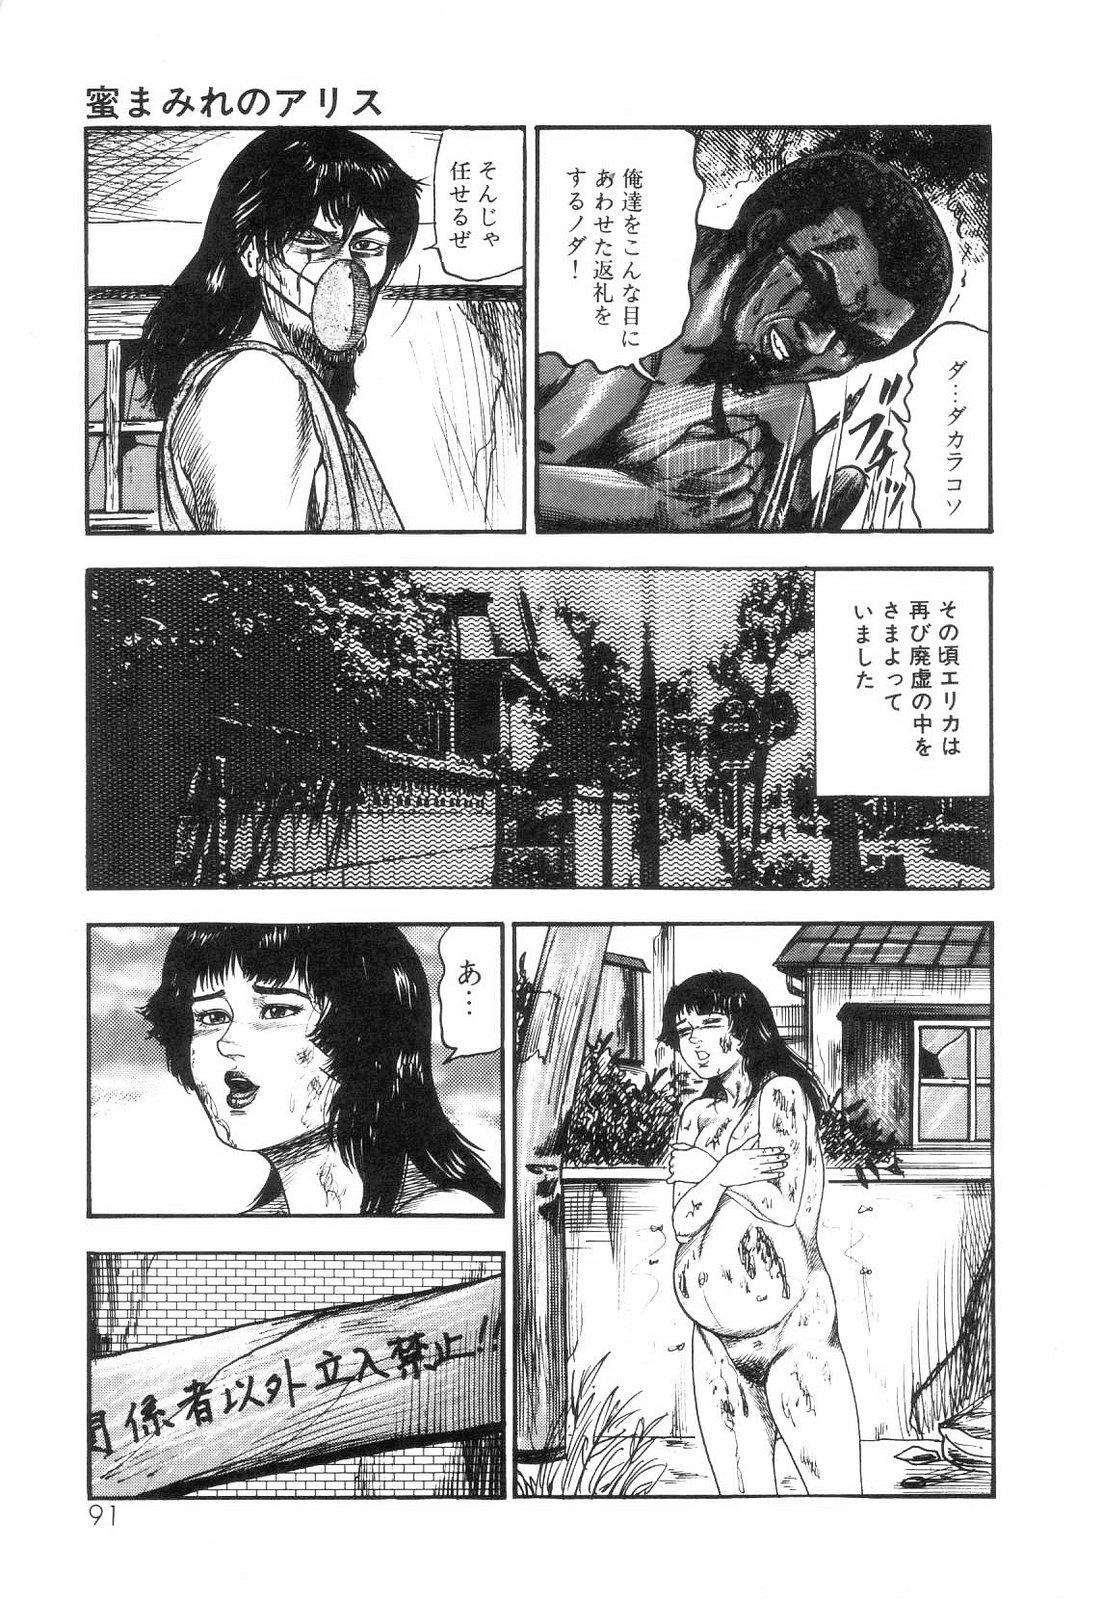 Shiro no Mokushiroku Vol. 6 - Juuai Erika no Shou 92